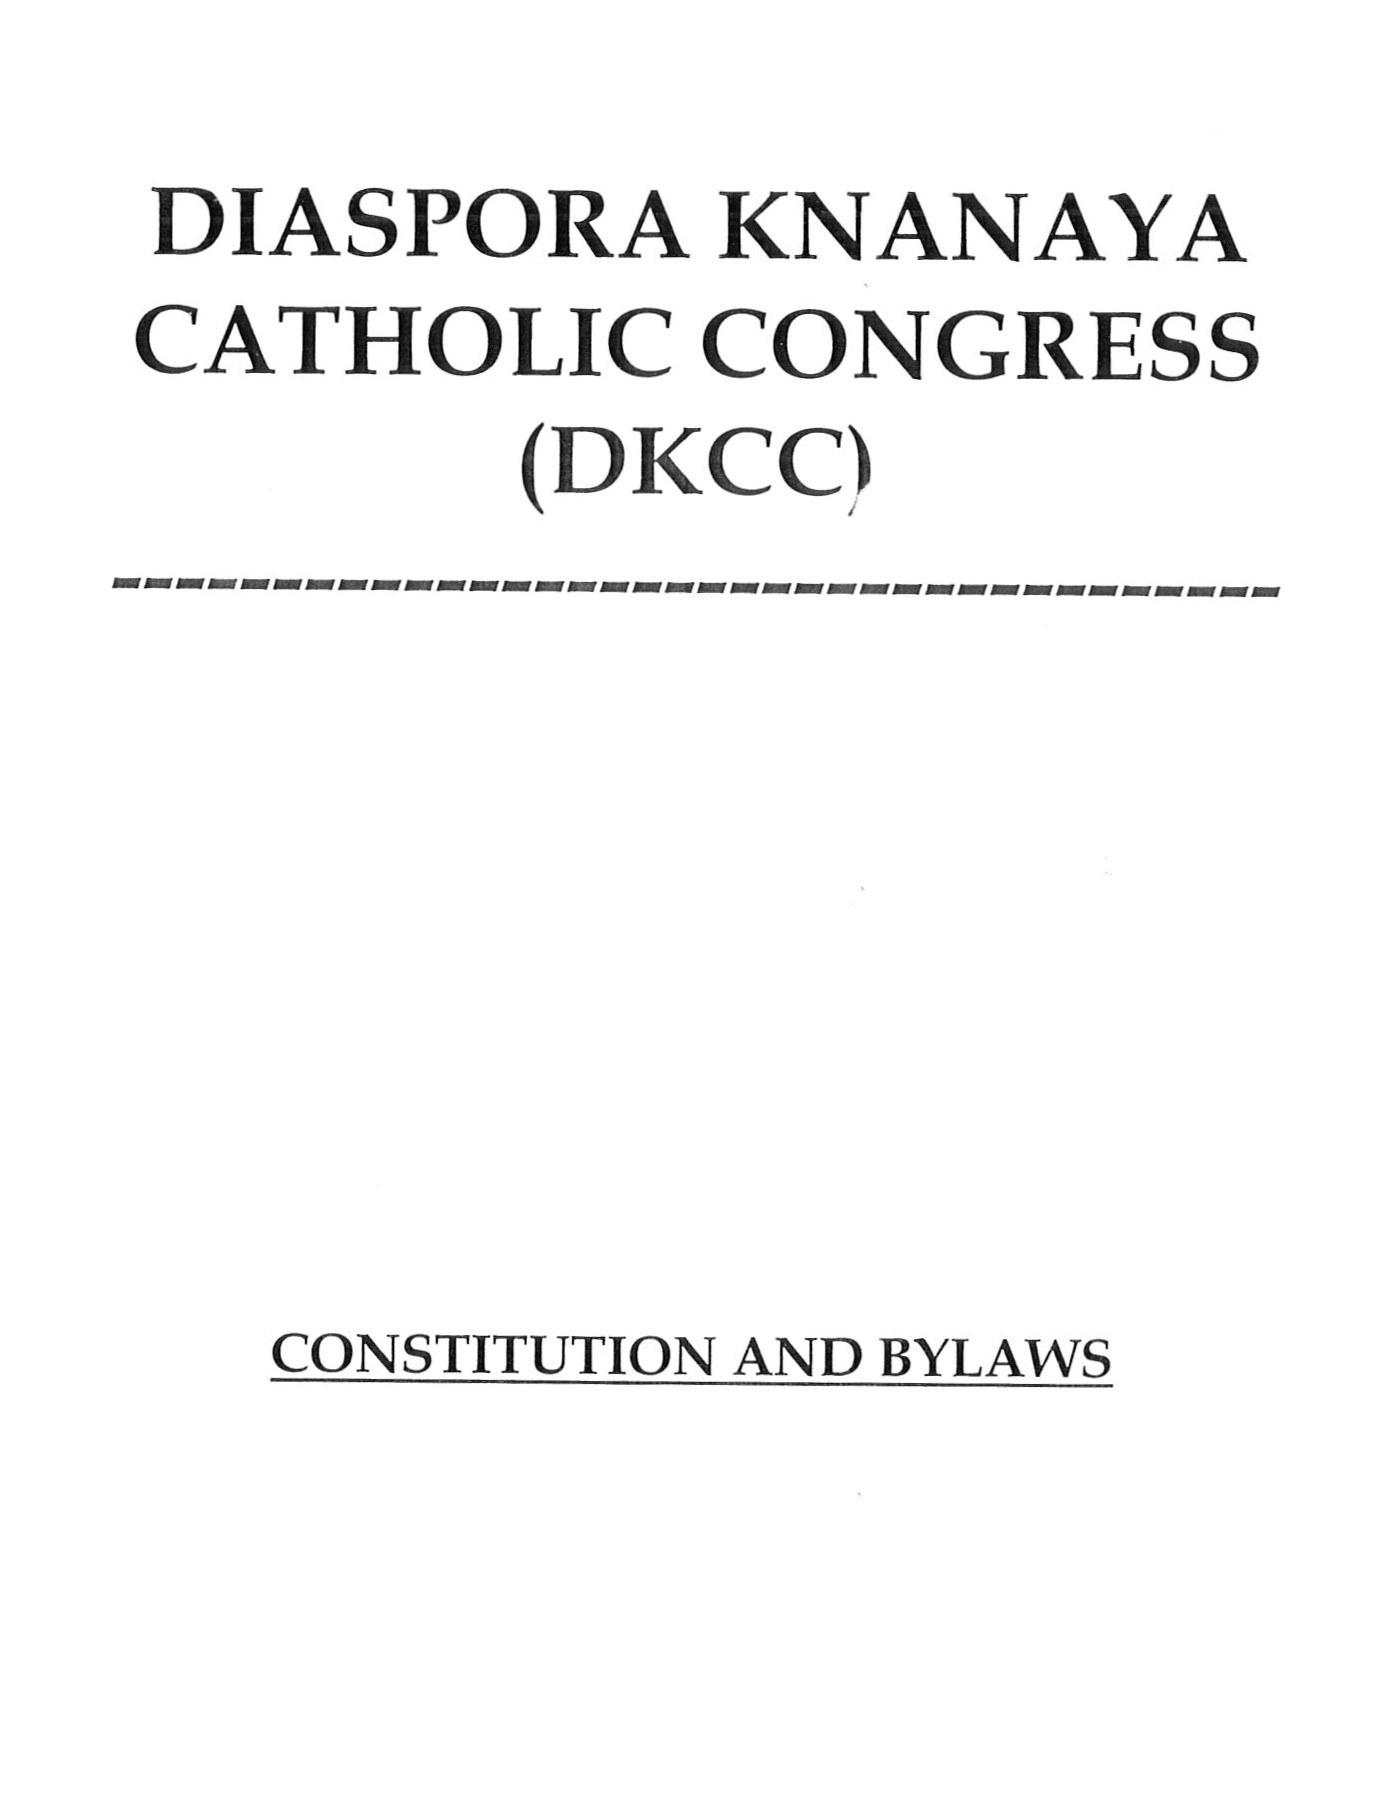 DKCC Constitution 2011